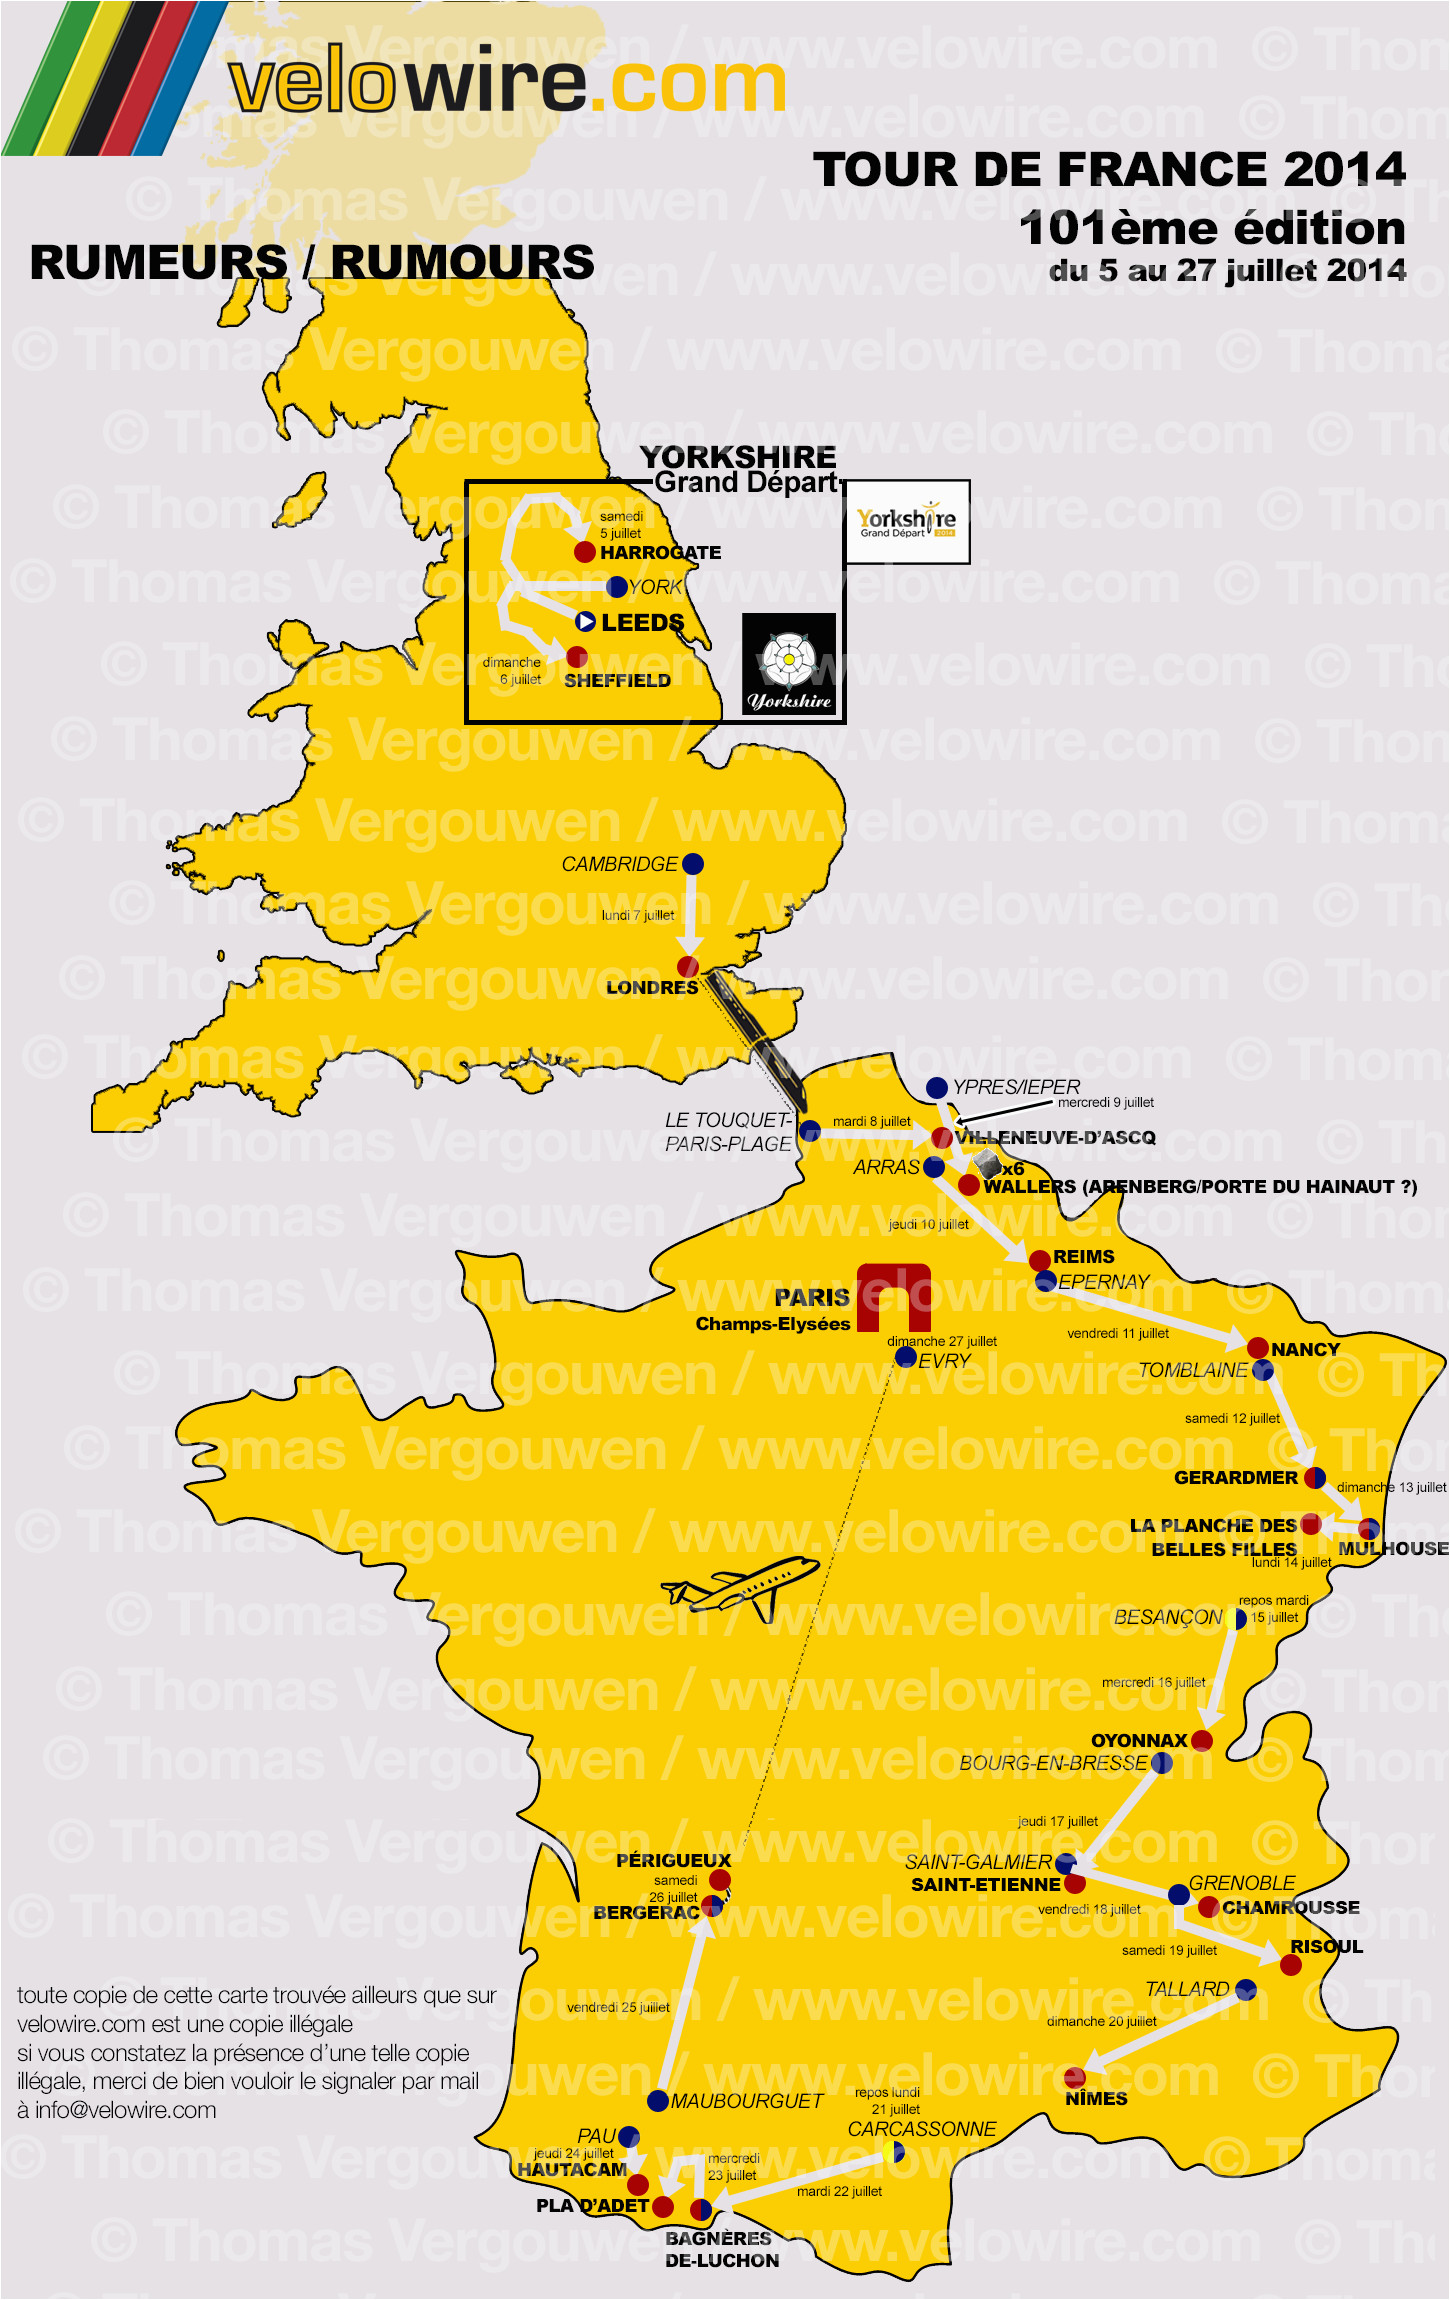 Tour De France 2014 Yorkshire Route Map tour De France 2014 the Rumours About the Race Route and